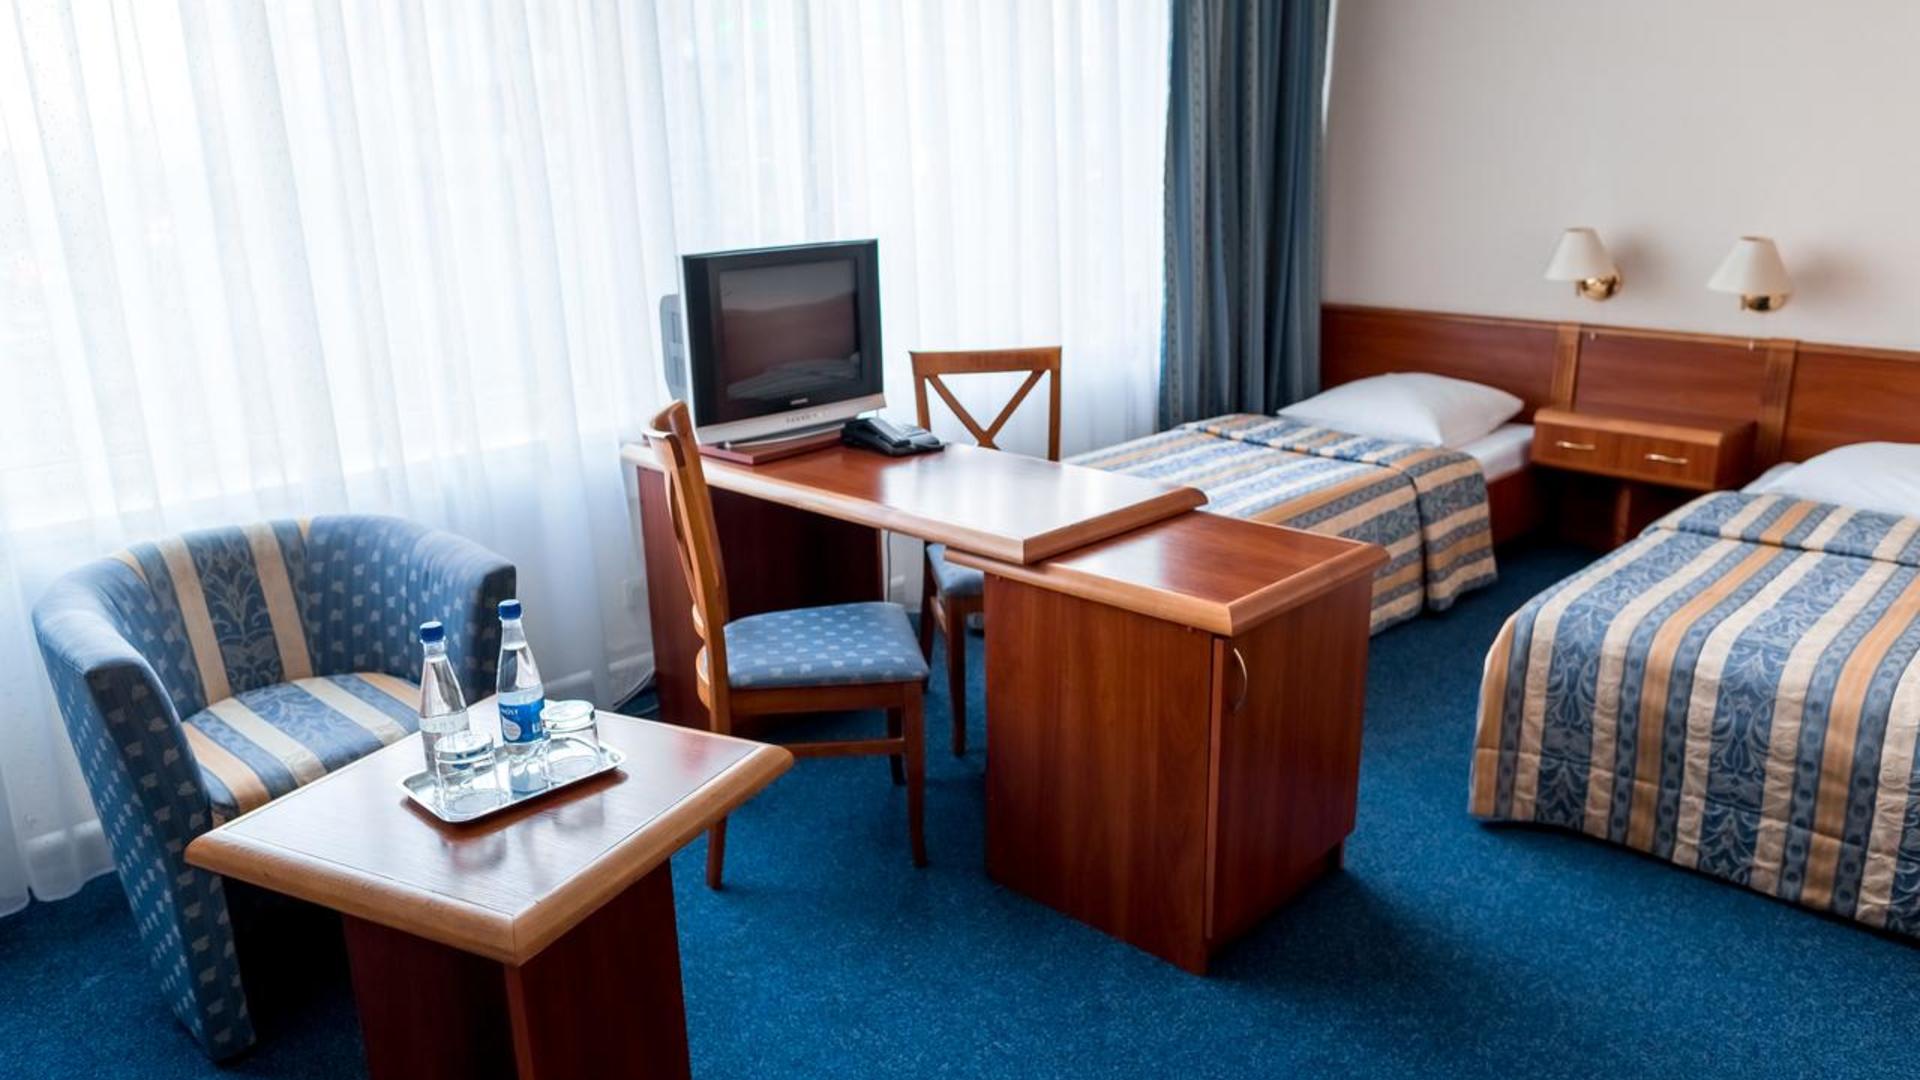 Сайт гостиницы турист калининград